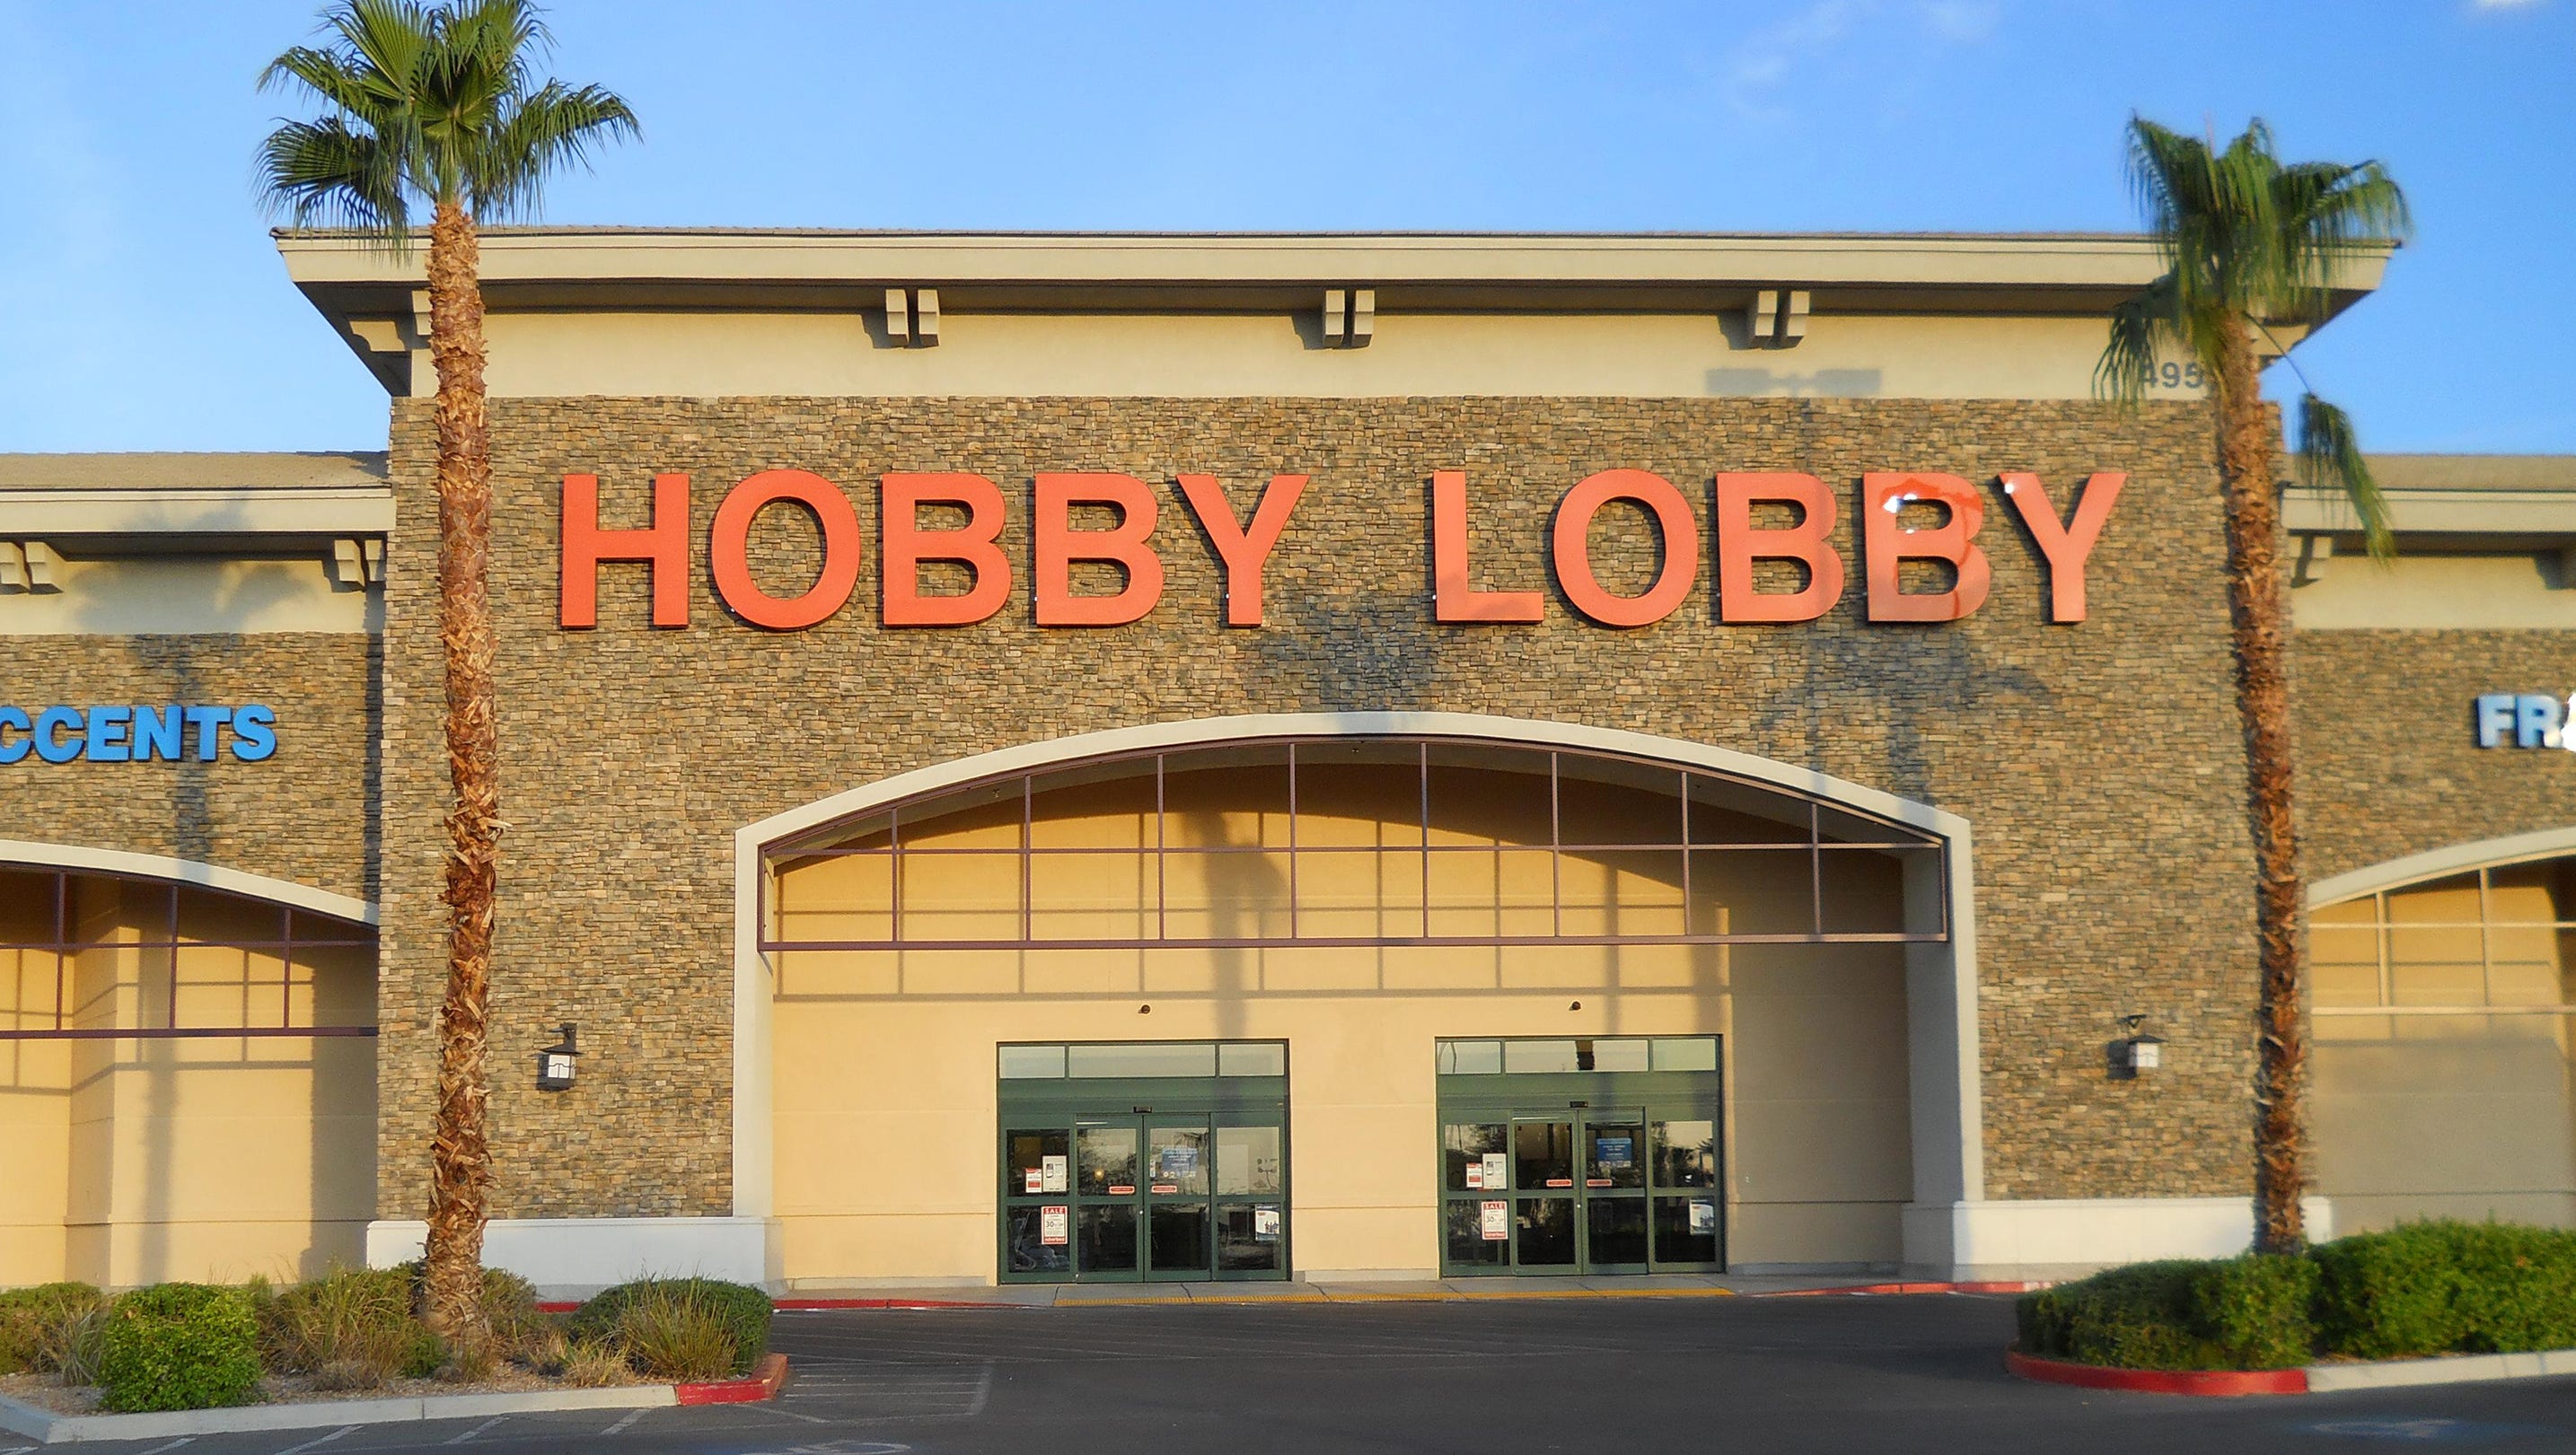 Hobby Lobby to open in Alamogordo in 2018